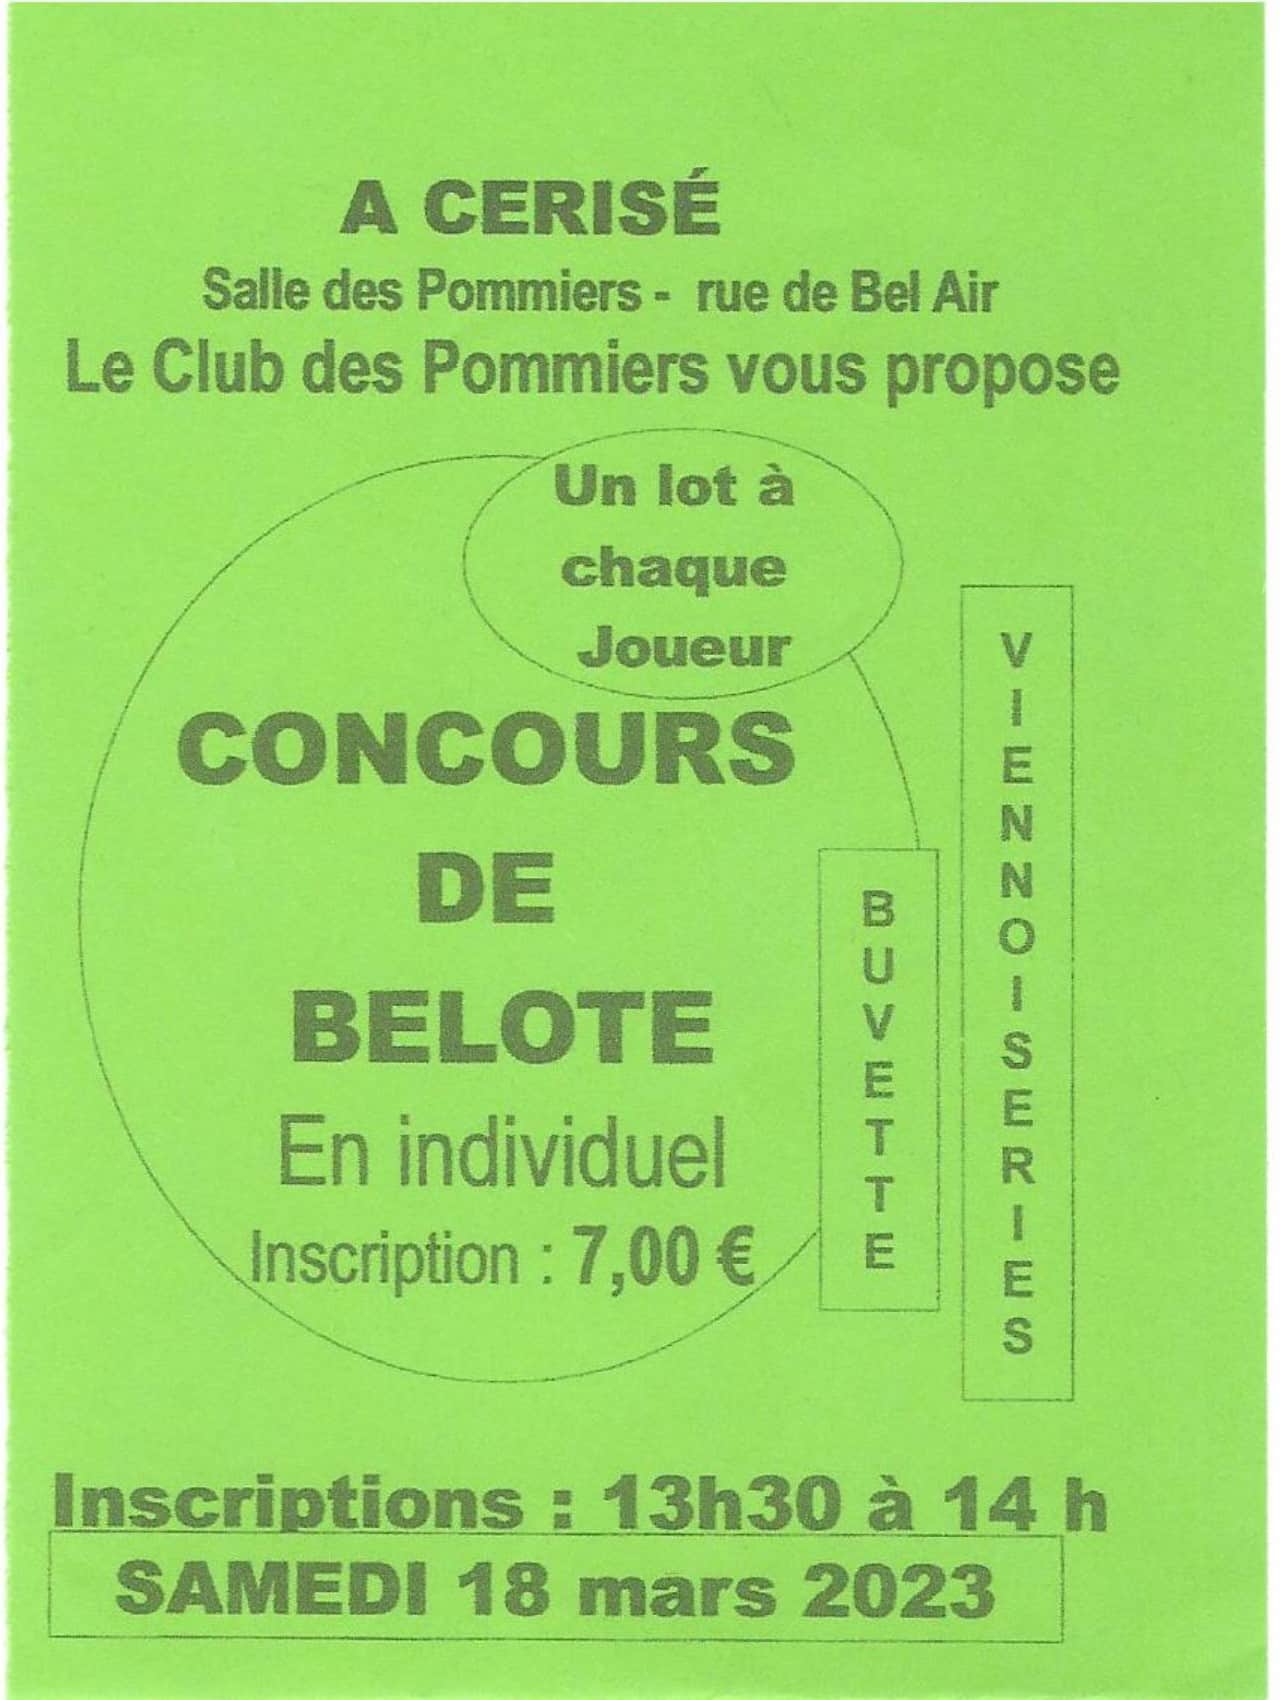 Concours de belote en individuel-samedi 18 mars à 14h à la Salle des Pommiers